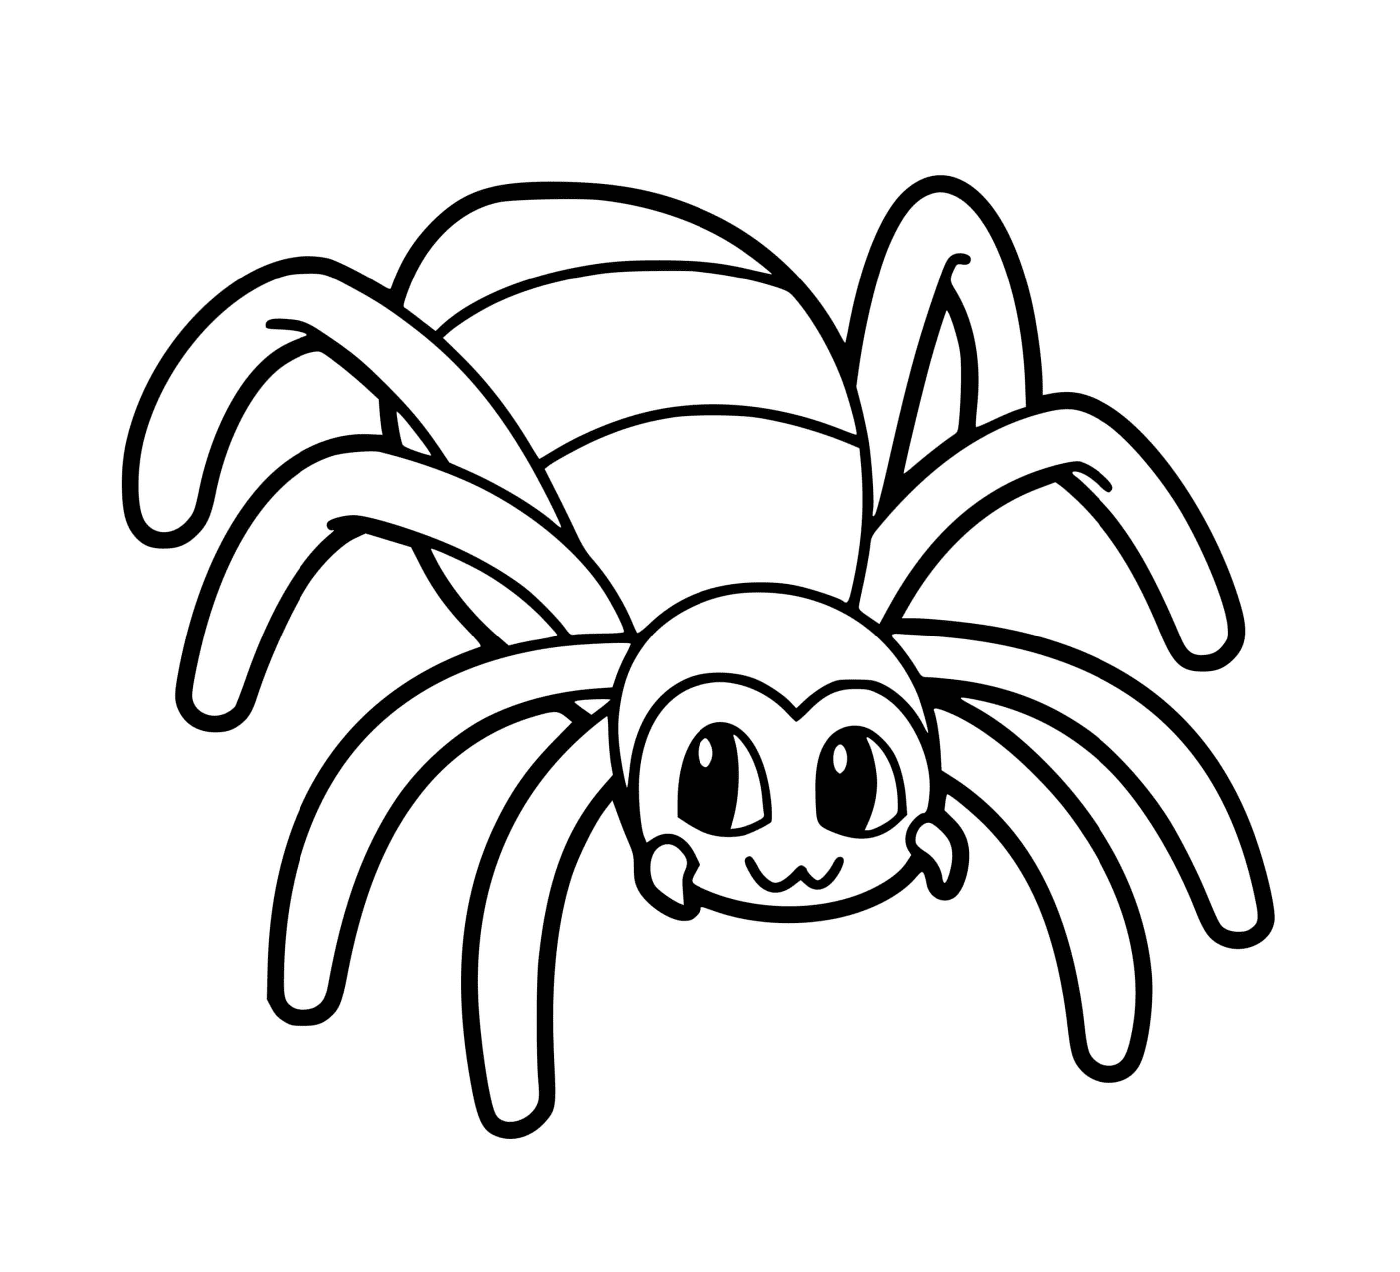  A spider 